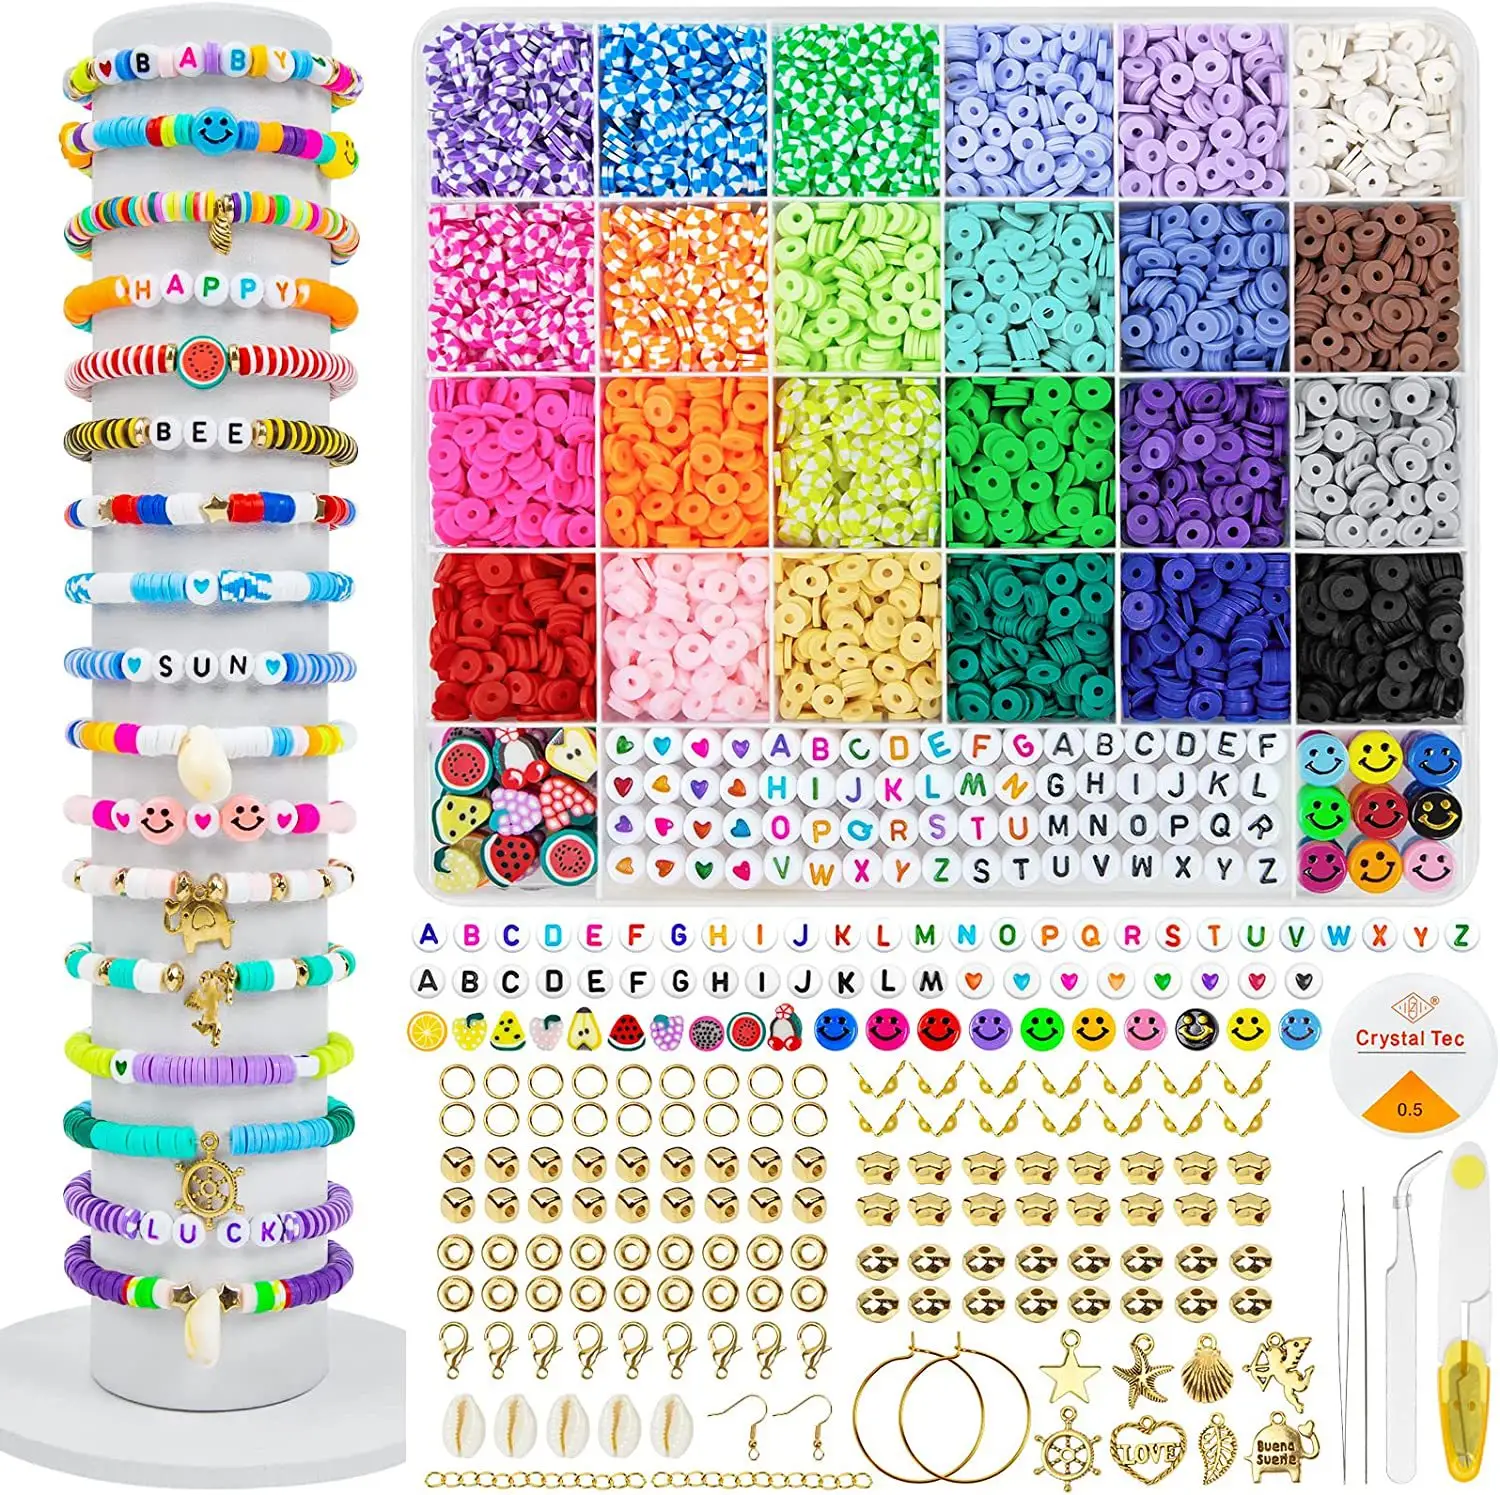 6600 pièces 24 couleurs plat rond polymère bricolage perles d'argile tranchées avec pendentif breloques Kit pour la fabrication de bijoux Kits Bracelet collier